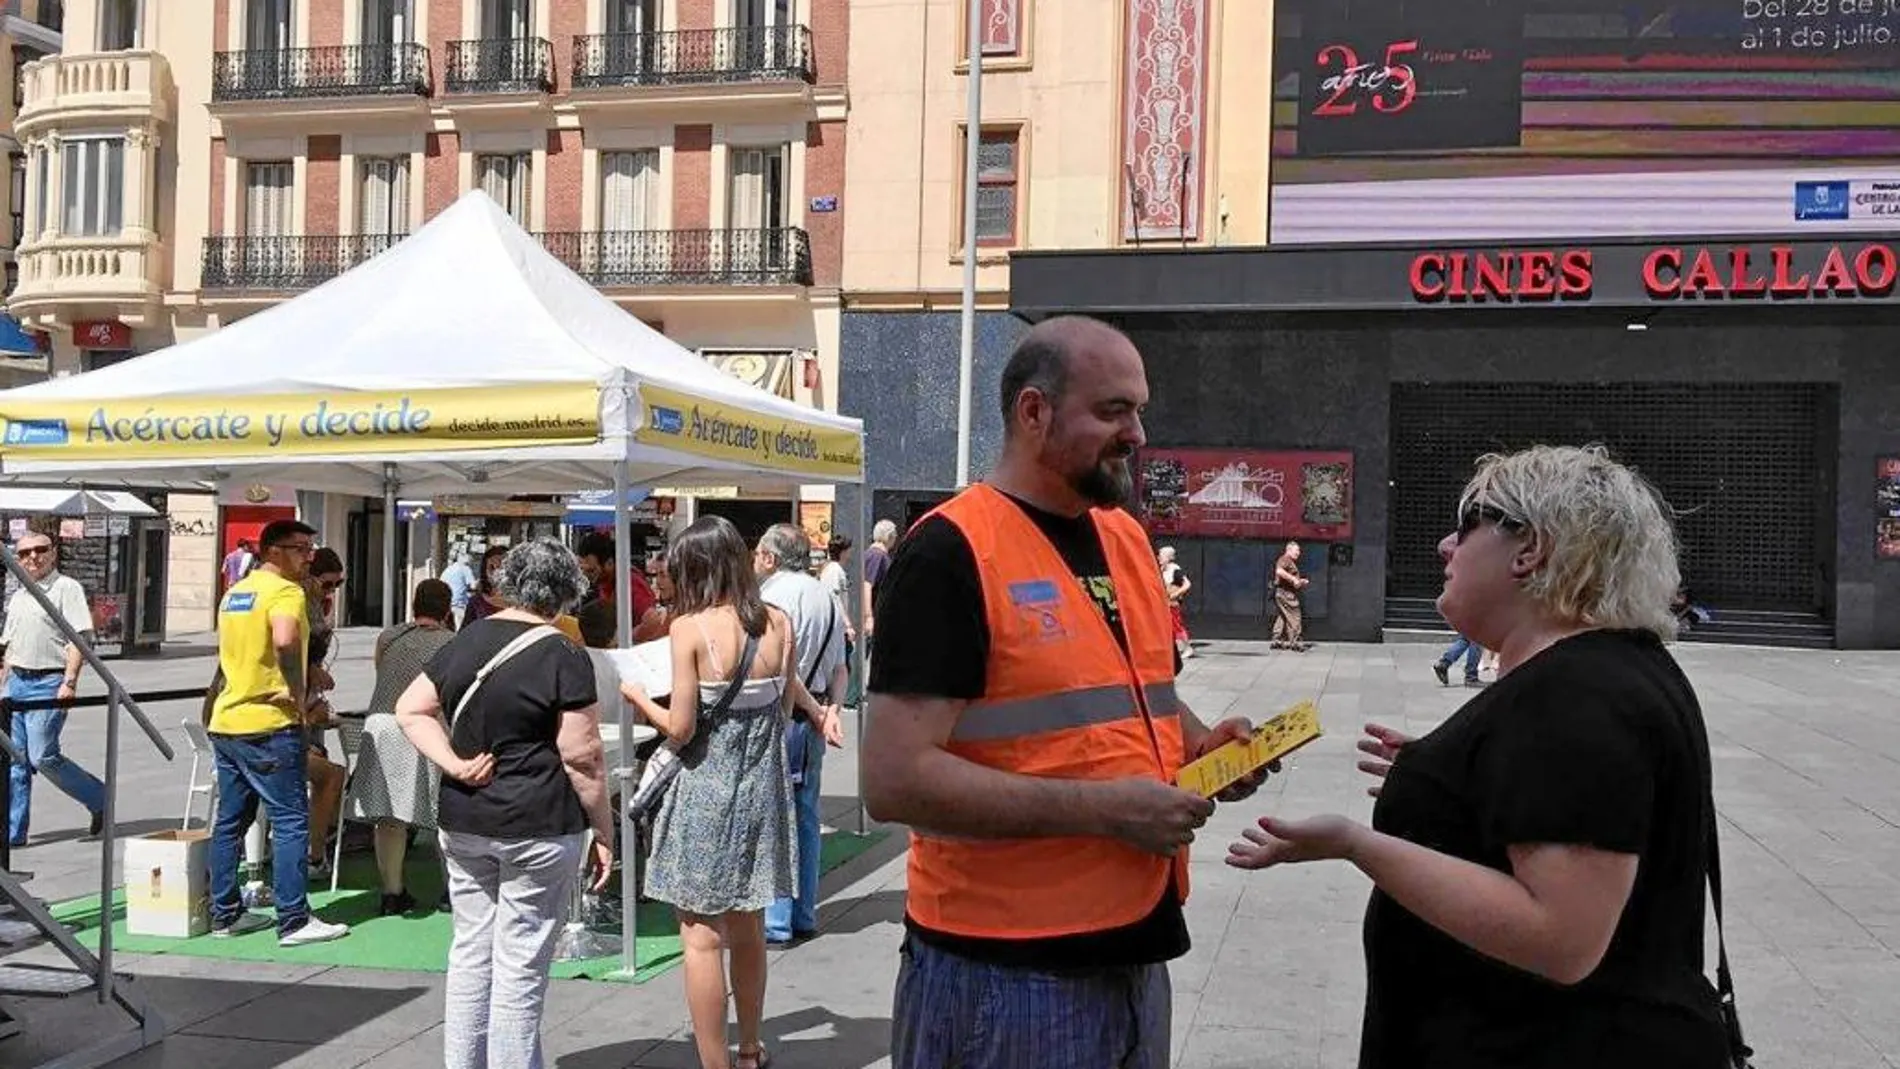 La campaña publicitaria de «Madrid Decide» llevó una caravana informativa a todos los distritos. En la imagen, en la plaza de Callao